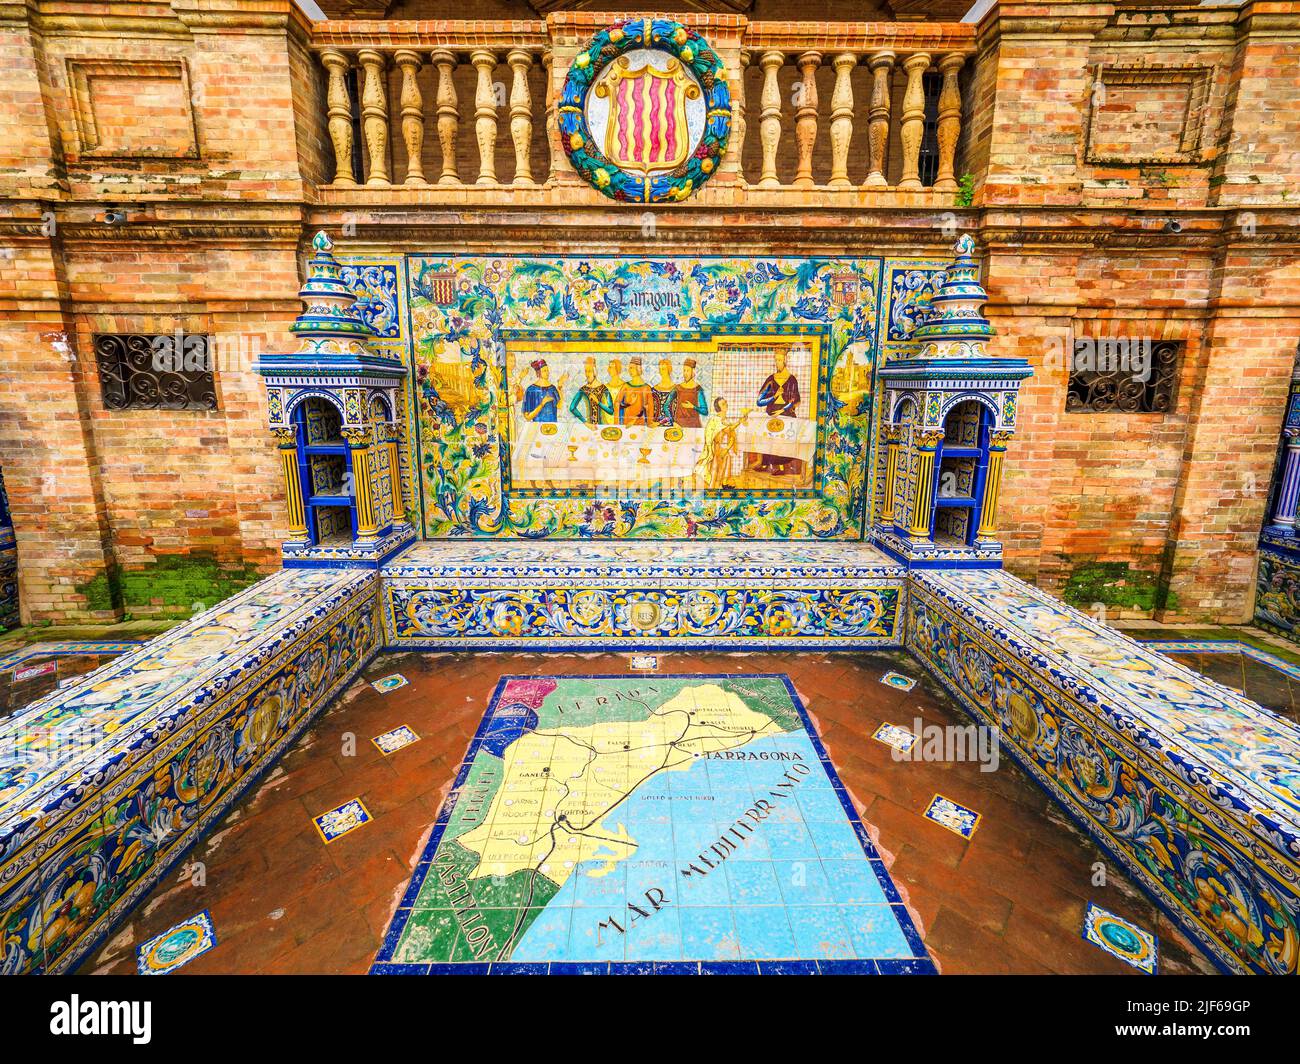 Détail de la mosaïque province espagnole alcôve de Tarragone le long des murs de la Plaza de Espana bâtiment - Séville, Espagne Banque D'Images